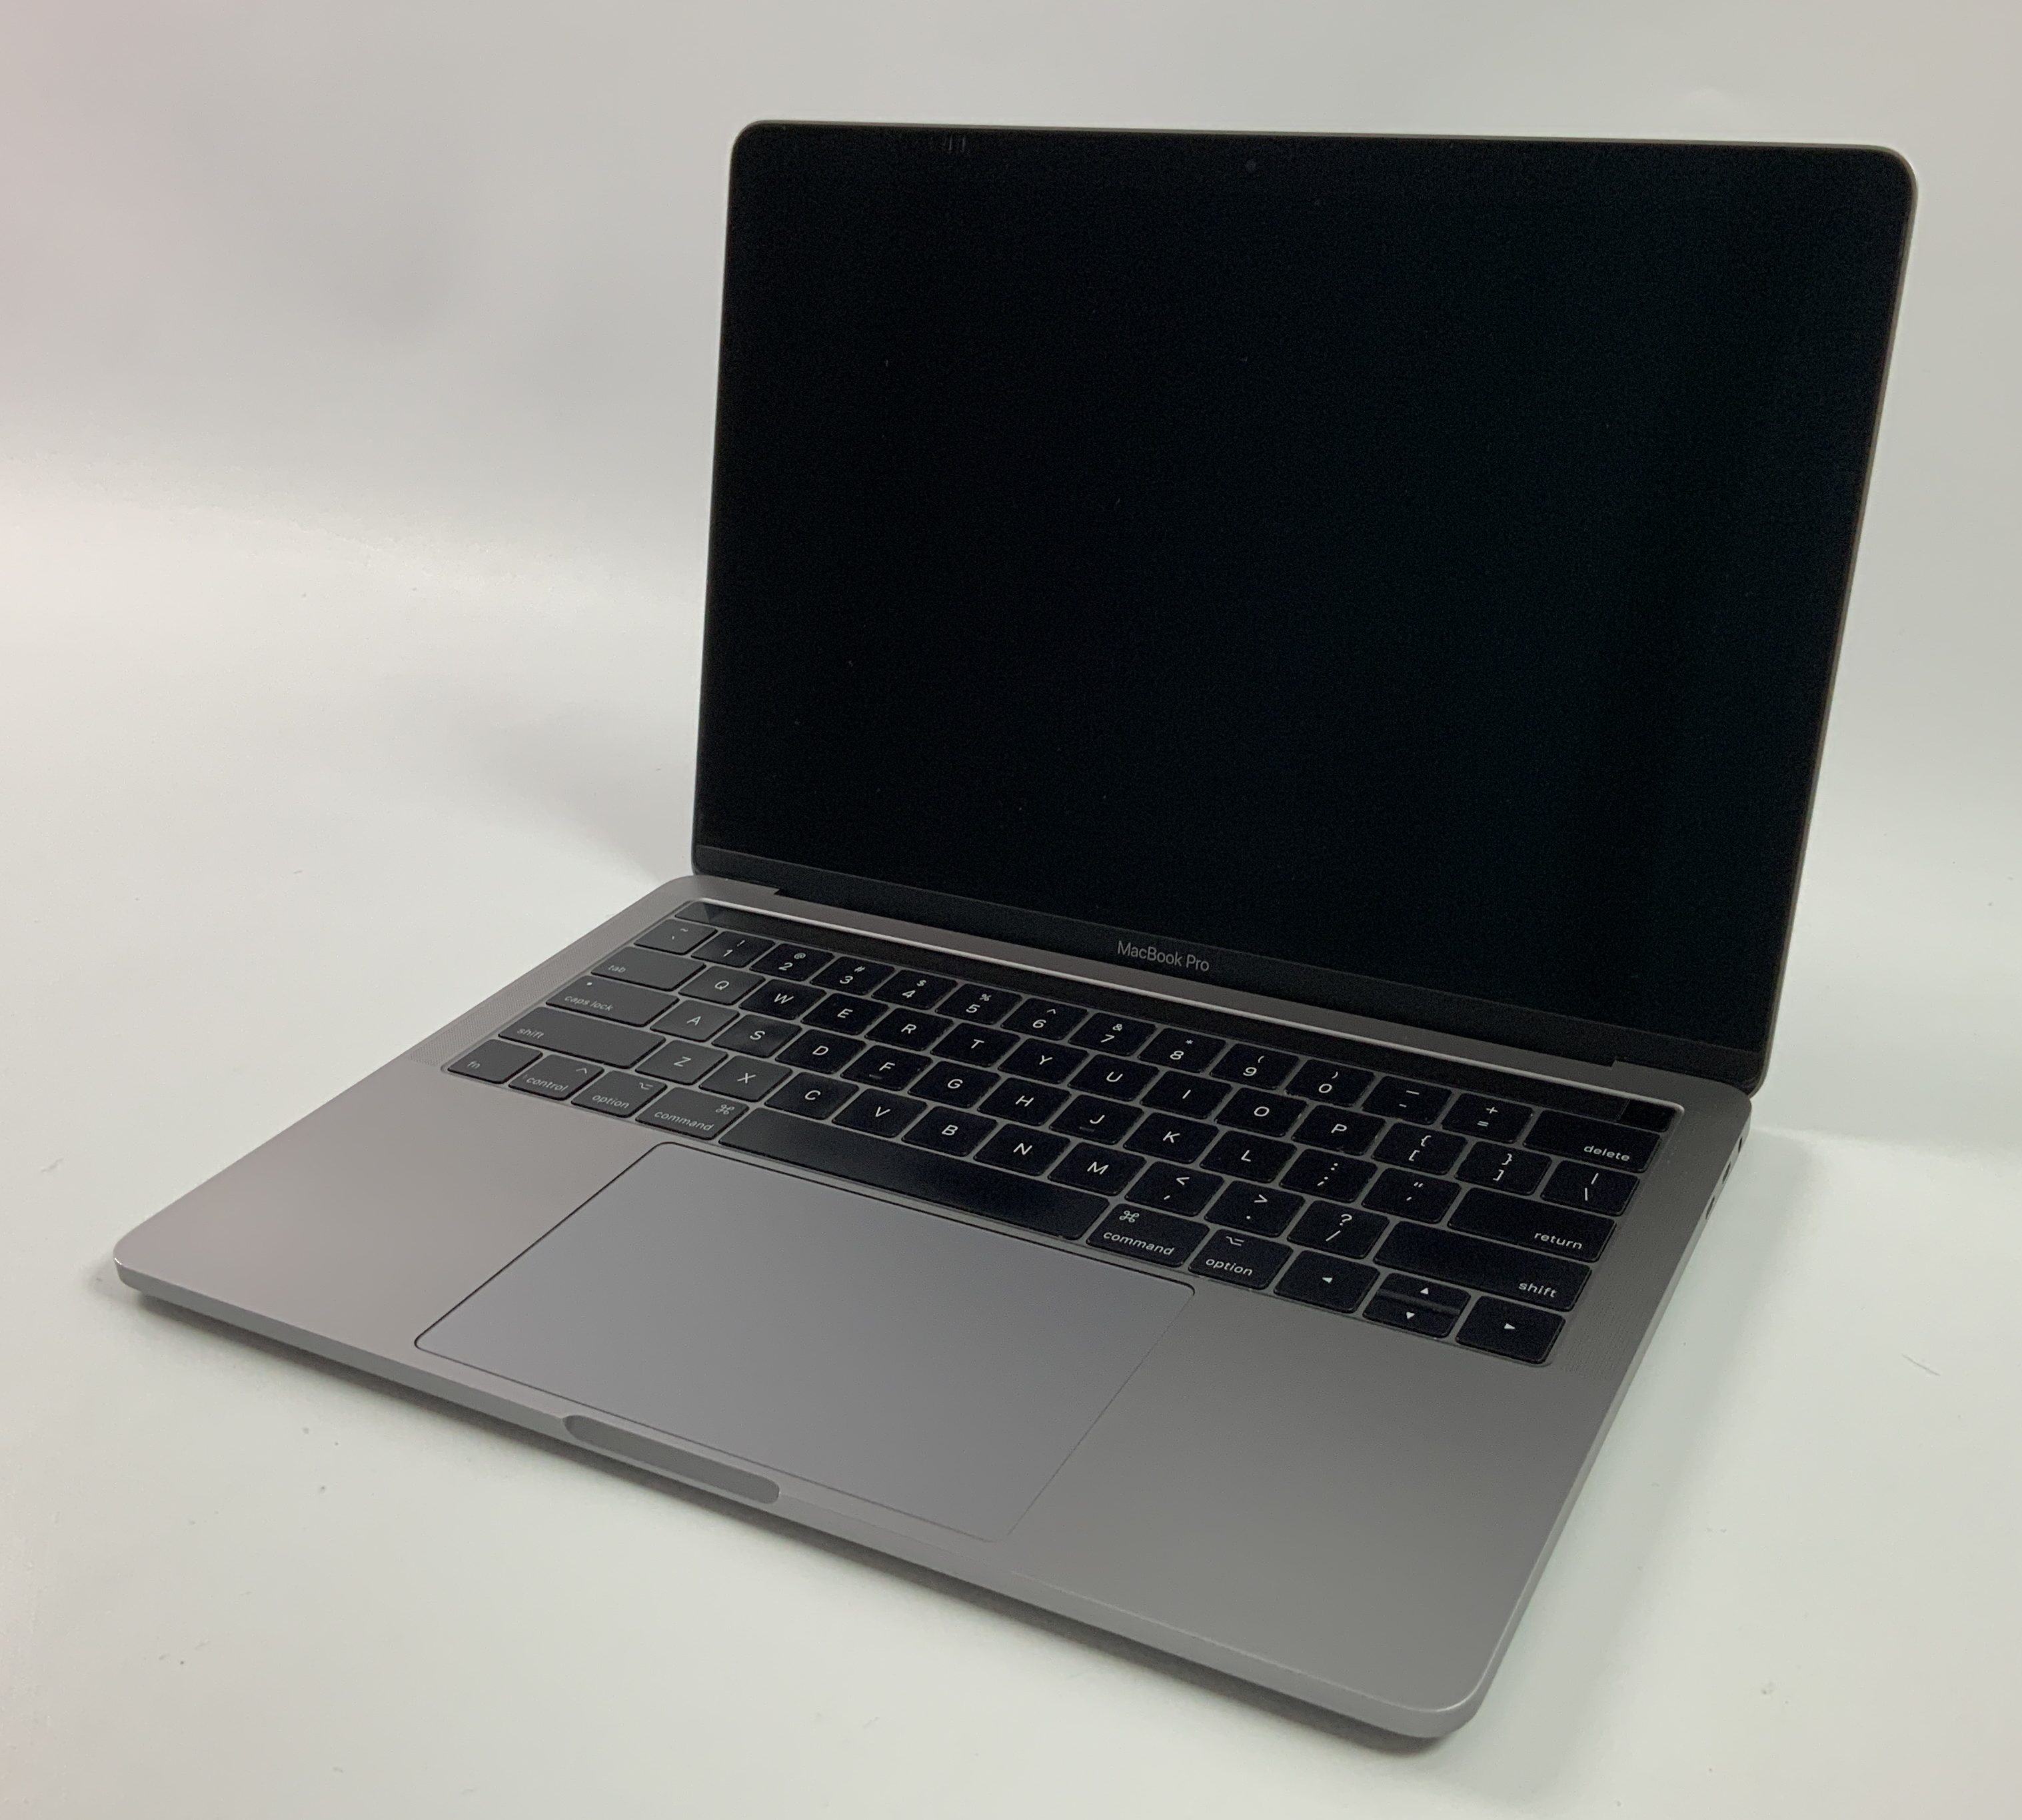 MacBook Pro 13" 4TBT Mid 2017 (Intel Core i5 3.1 GHz 8 GB RAM 256 GB SSD), Space Gray, Intel Core i5 3.1 GHz, 8 GB RAM, 256 GB SSD, Bild 1